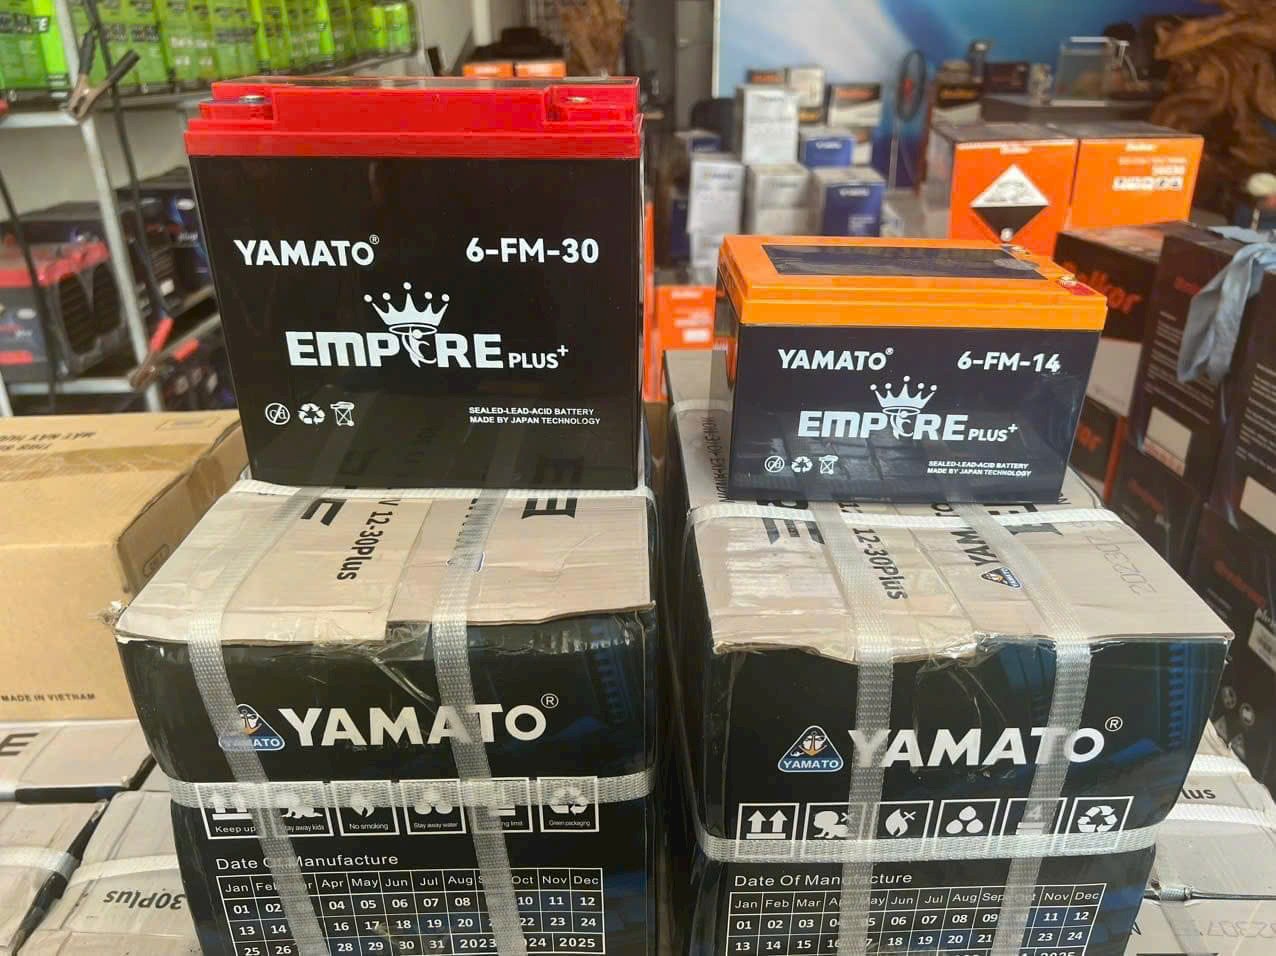 Ắc quy Yamato chính hãng phân phối tại Minh Anh - Thái Bình